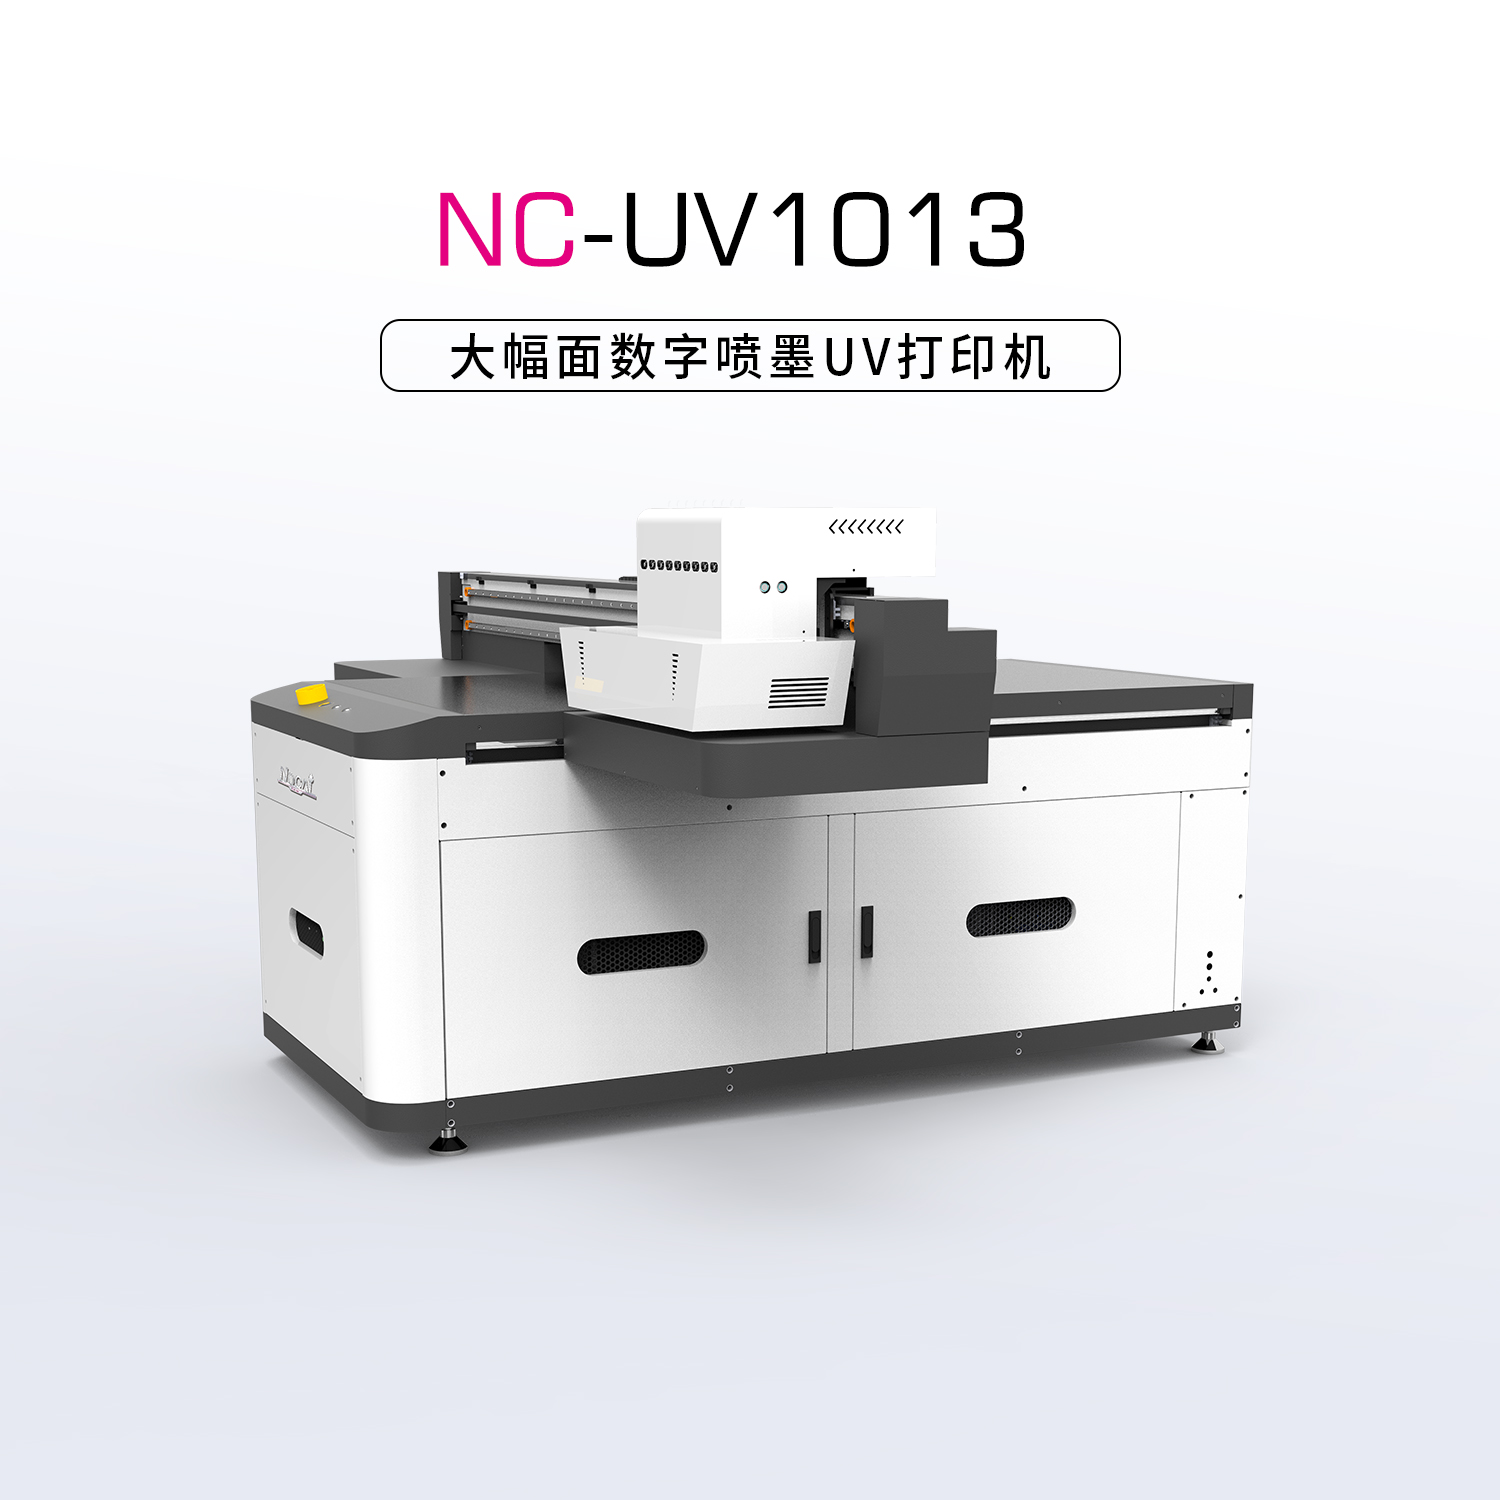 UV彩印机有哪些优势以及使用时需要注意的？